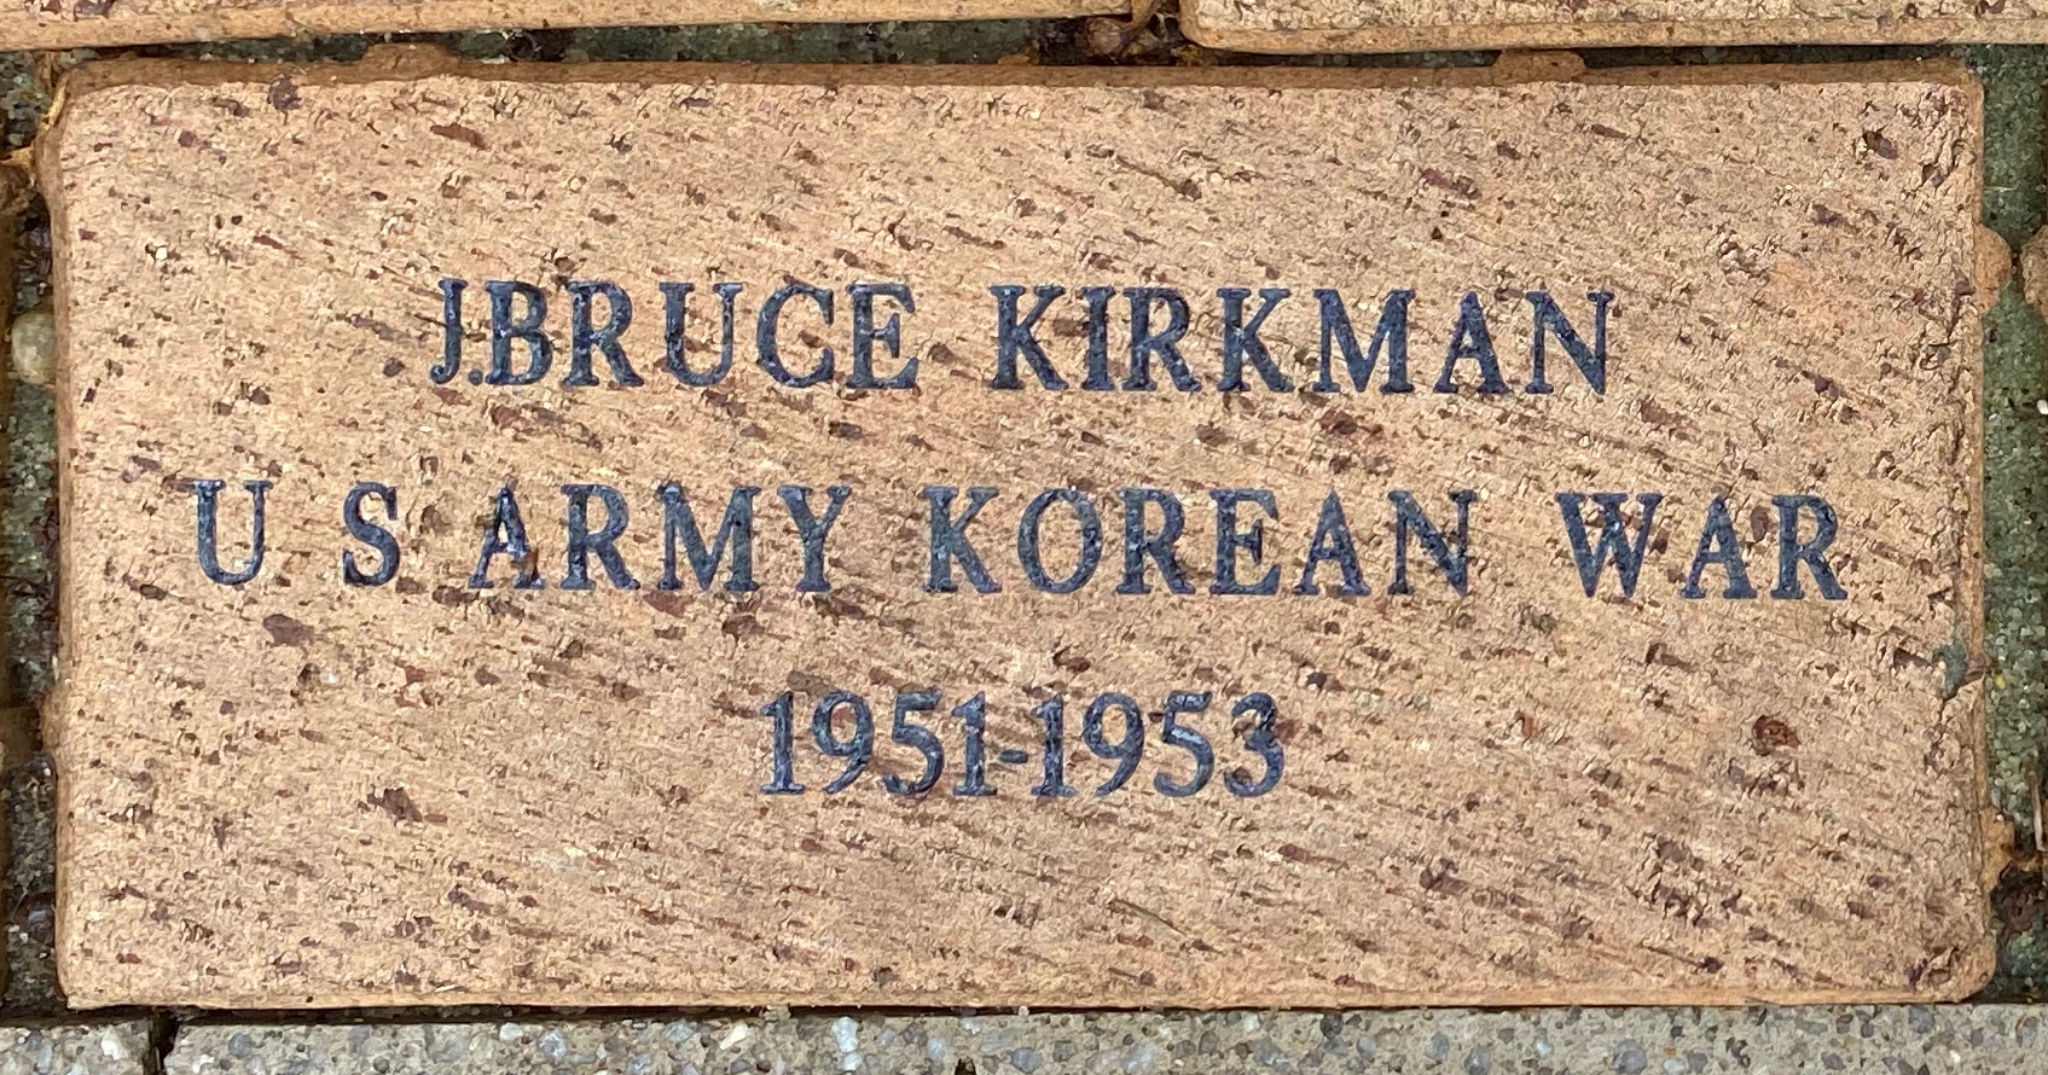 J.BRUCE KIRKMAN U S ARMY KOREAN WAR 1951- 1953